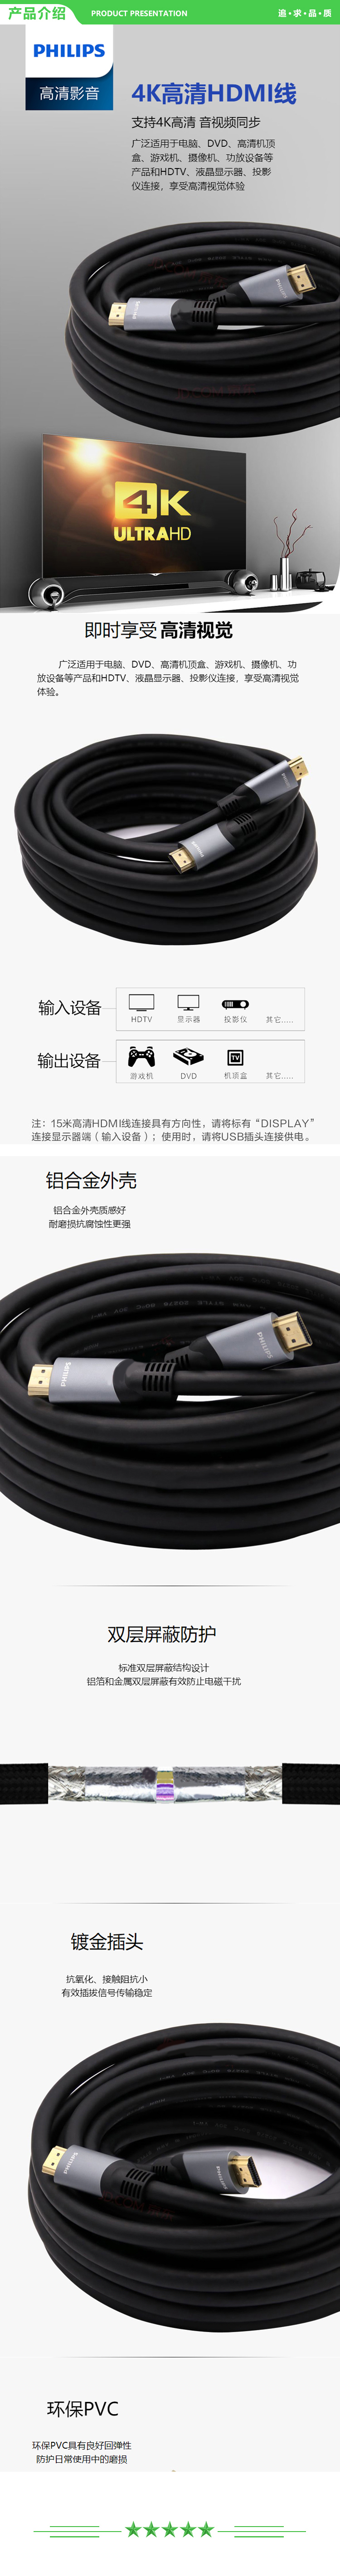 飞利浦 PHILIPS SWL6122M 93 HDMI2.0版高清线 支持4K60Hz 3d Arc 连接线 15米v .jpg